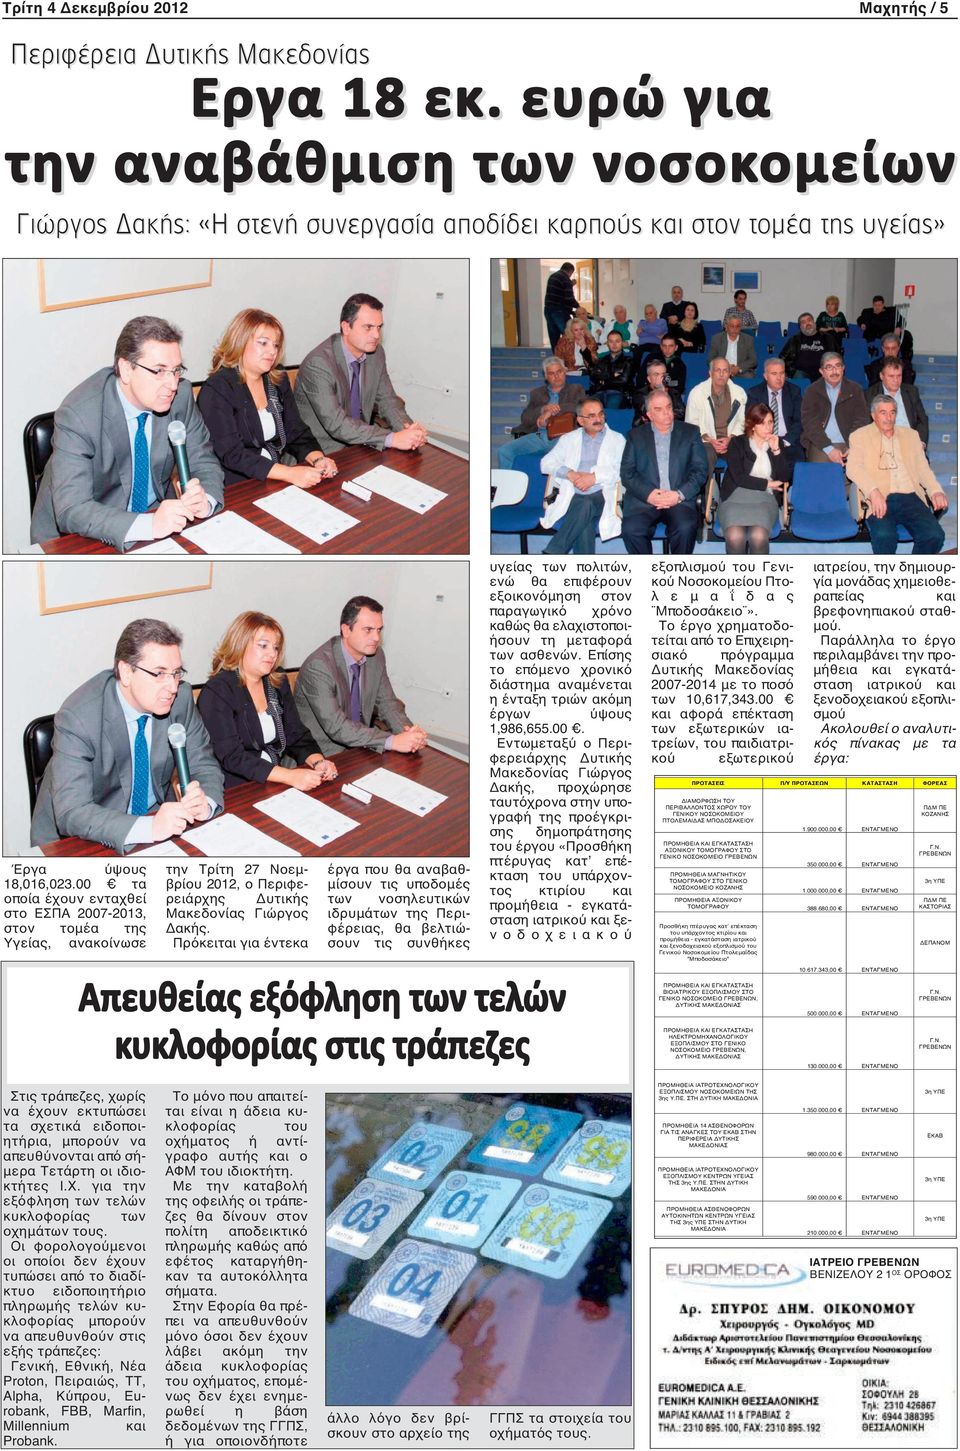 00 τα οποία έχουν ενταχθεί στο ΕΣΠΑ 2007-2013, στον τομέα της Υγείας, ανακοίνωσε την Τρίτη 27 Νοεμβρίου 2012, ο Περιφερειάρχης Δυτικής Μακεδονίας Γιώργος Δακής.